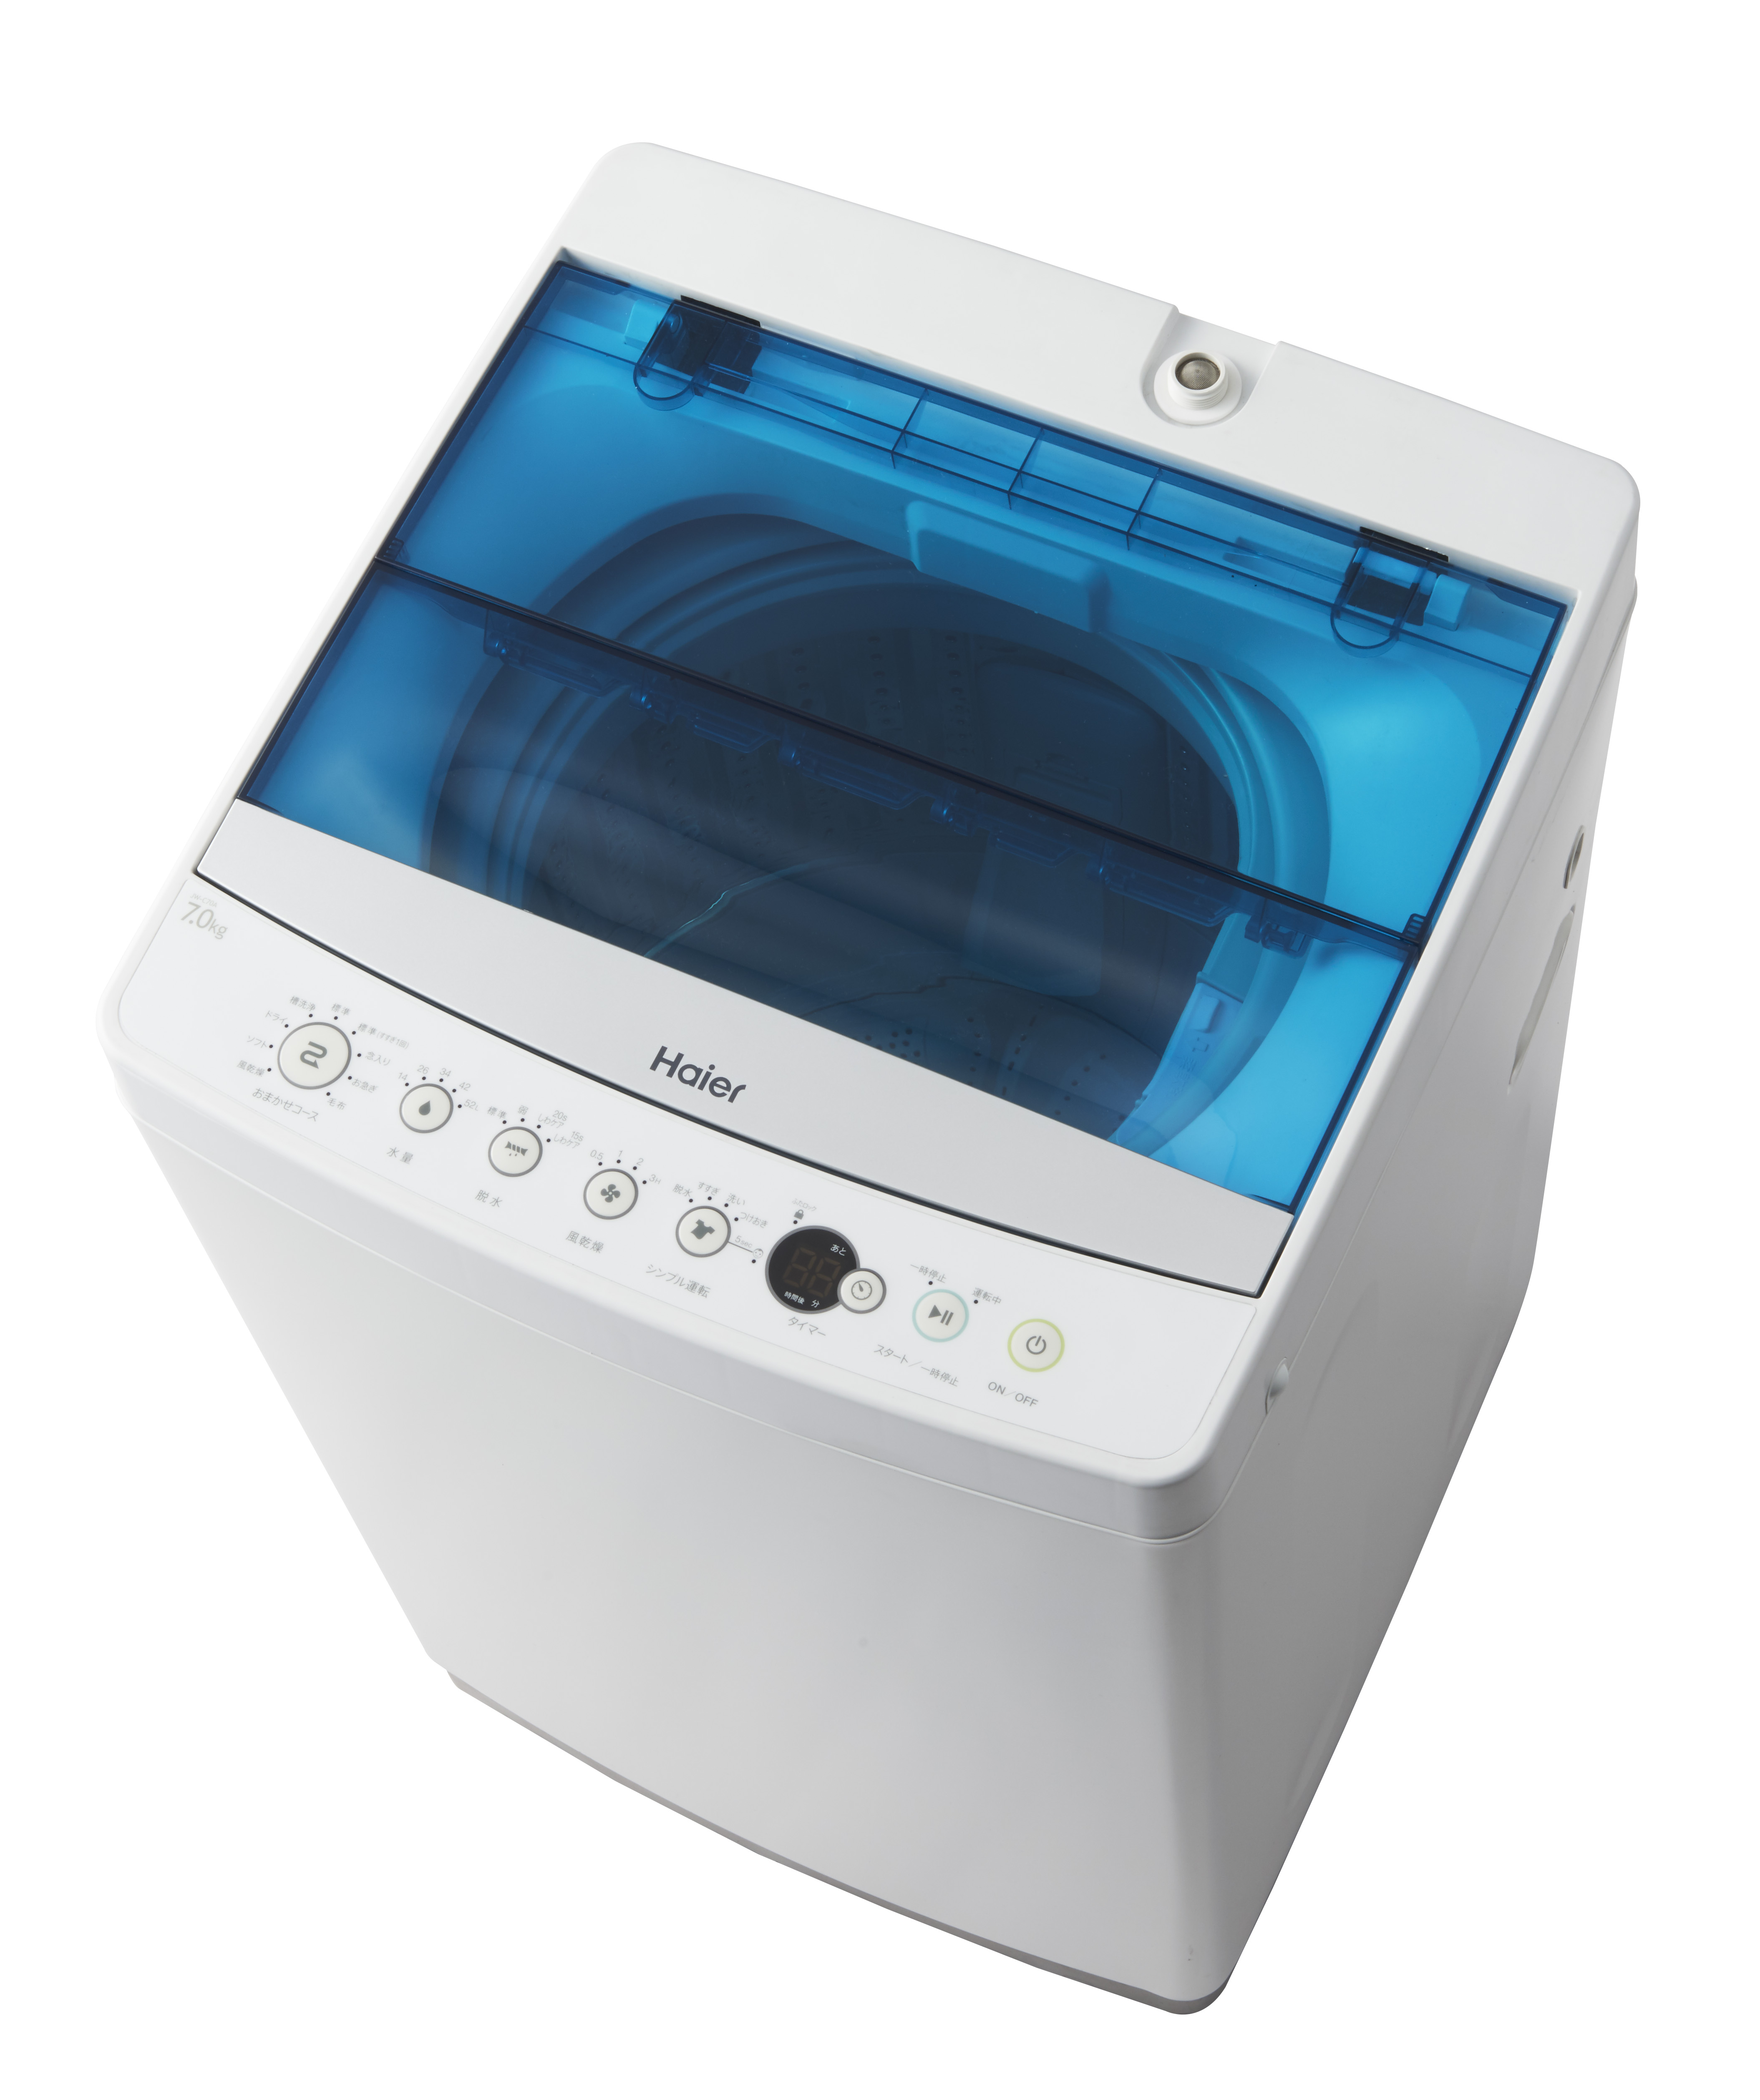 短い洗濯時間で衣類にもやさしい7.0kg・6.0kg全自動洗濯機を発売